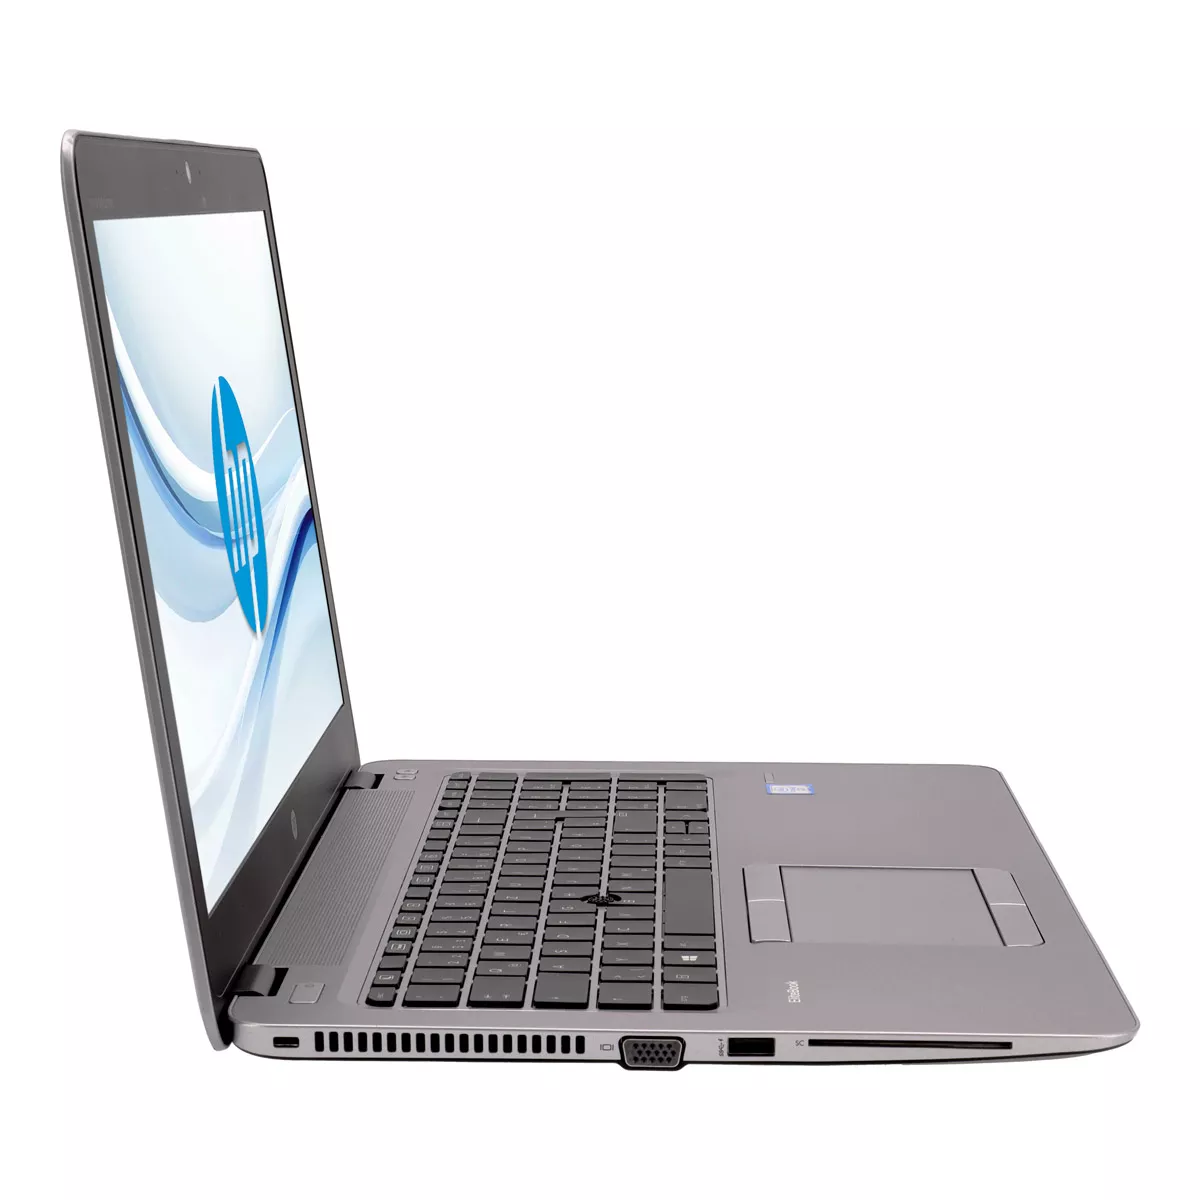 HP EliteBook 850 G4 Core i5 7300U Full-HD 240 GB M.2 SSD Webcam A